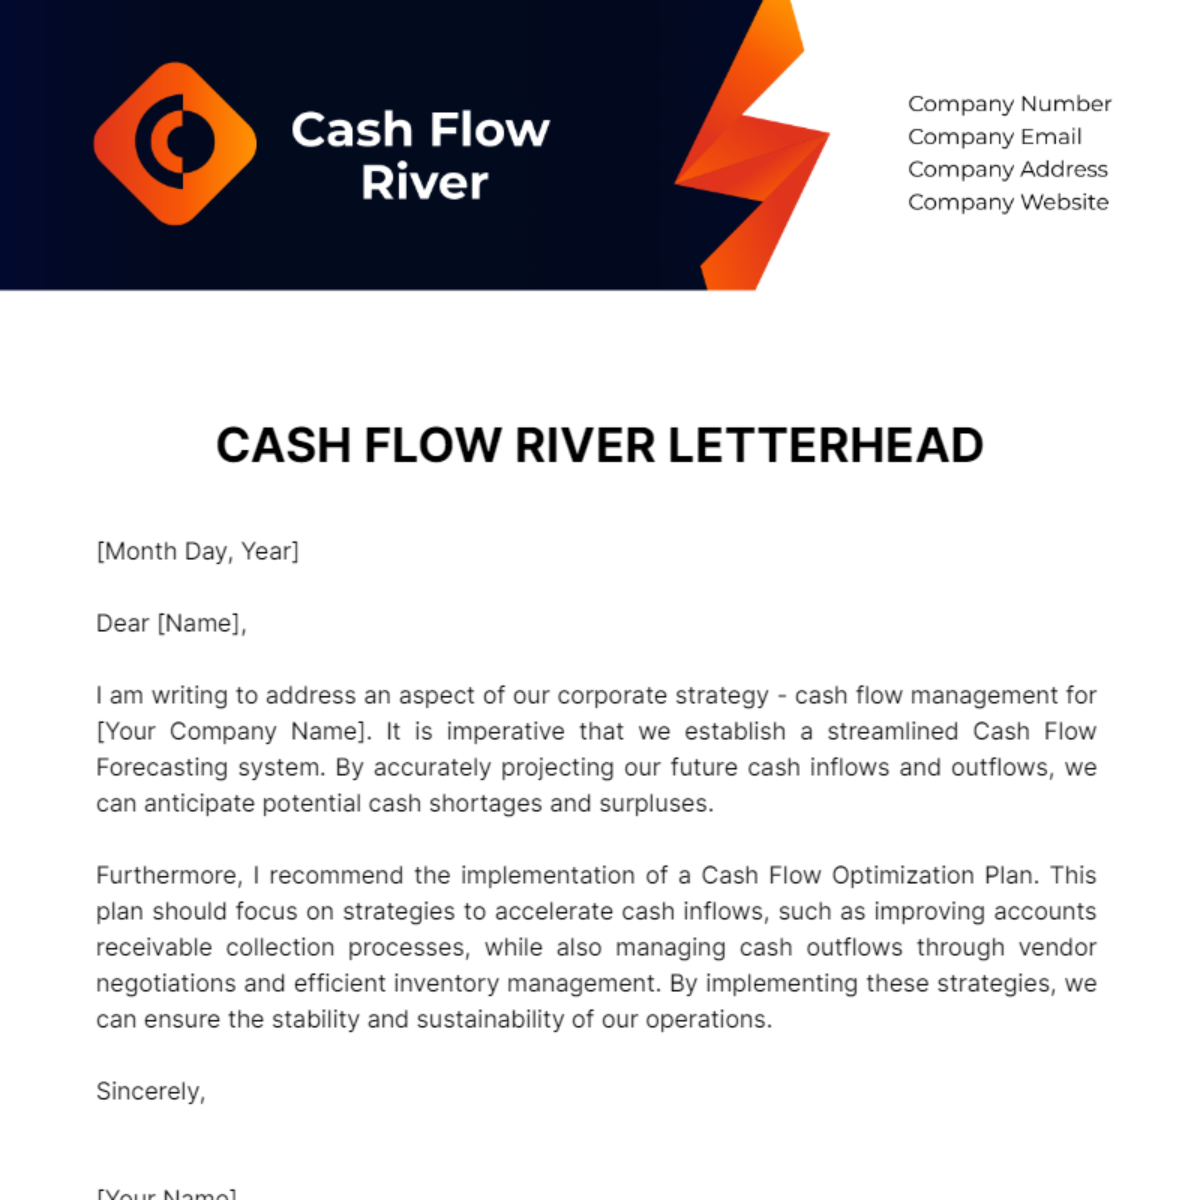 Free Cash Flow River Letterhead Template